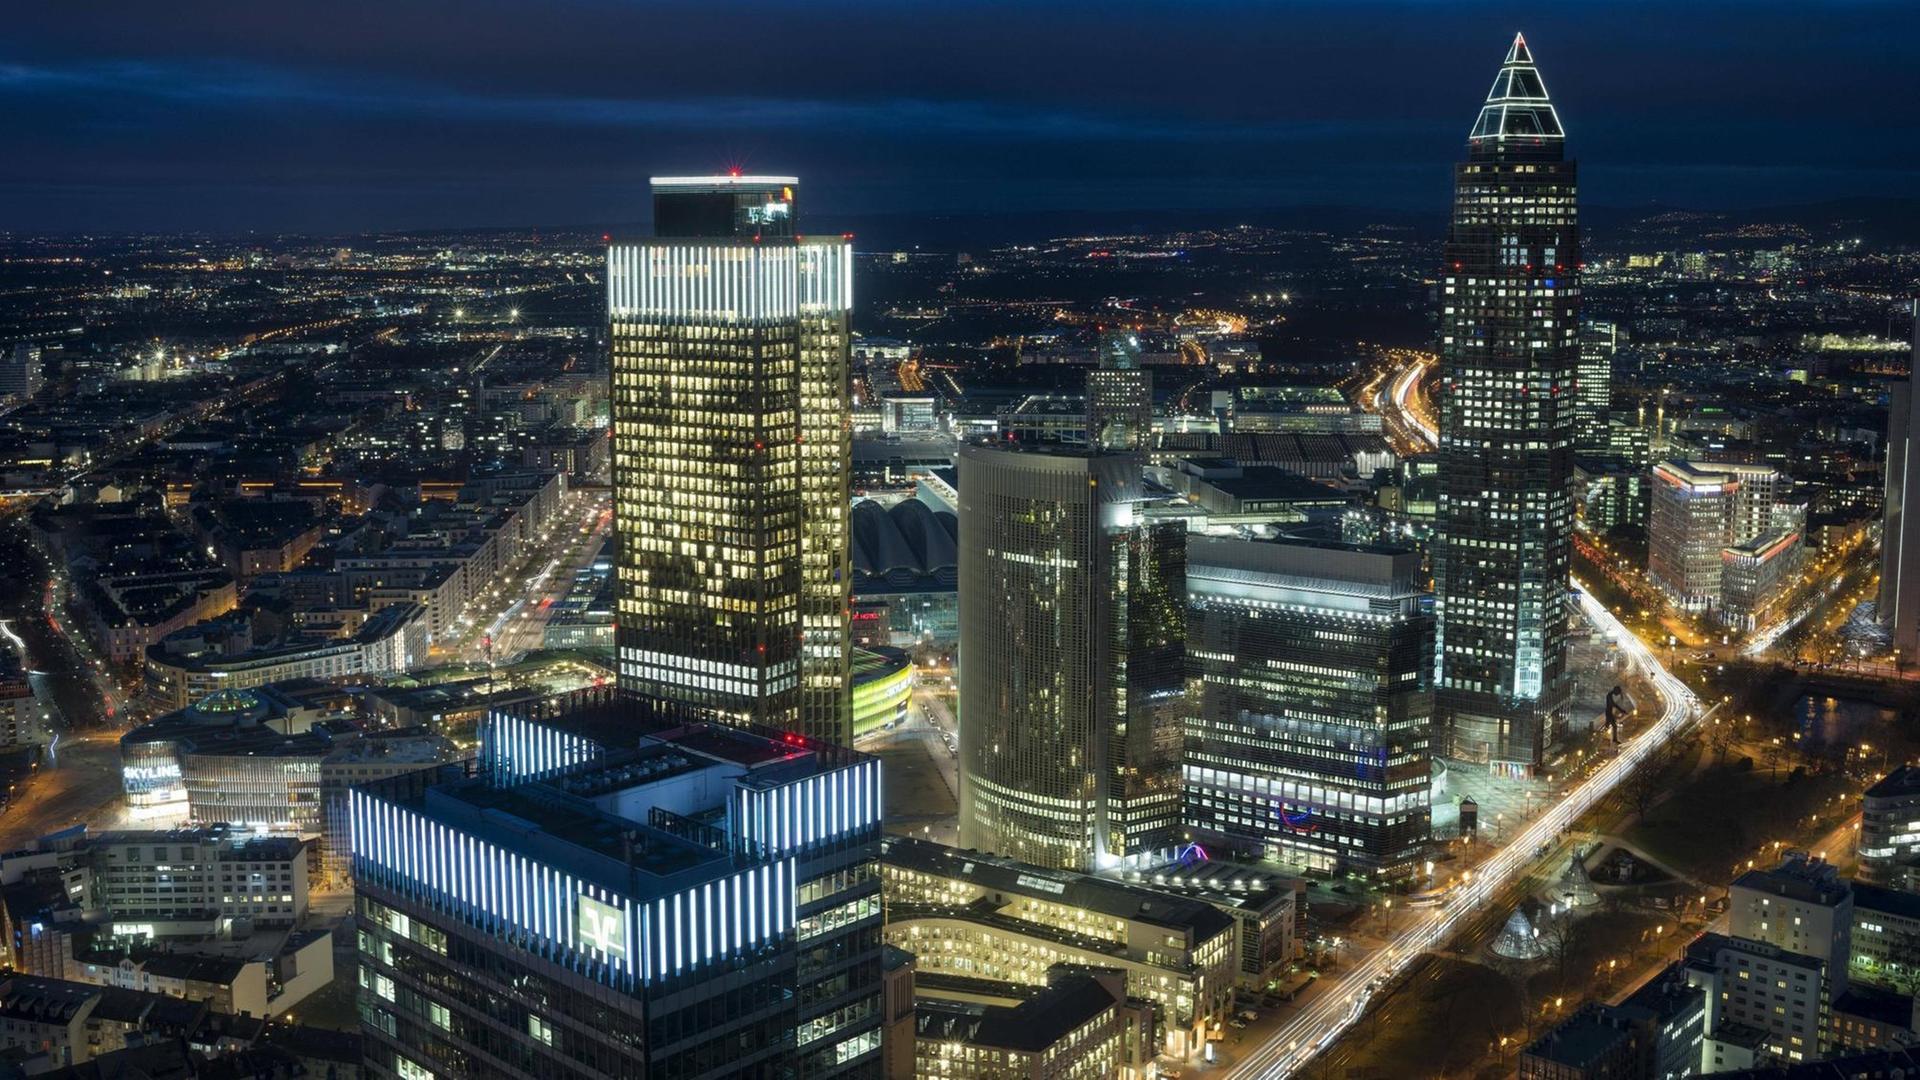 Skyline und Messe in Frankfurt am Main bei Nacht: Bürohäuser mit leuchtenden Fenstern sowie hell erleuchtete Straßen